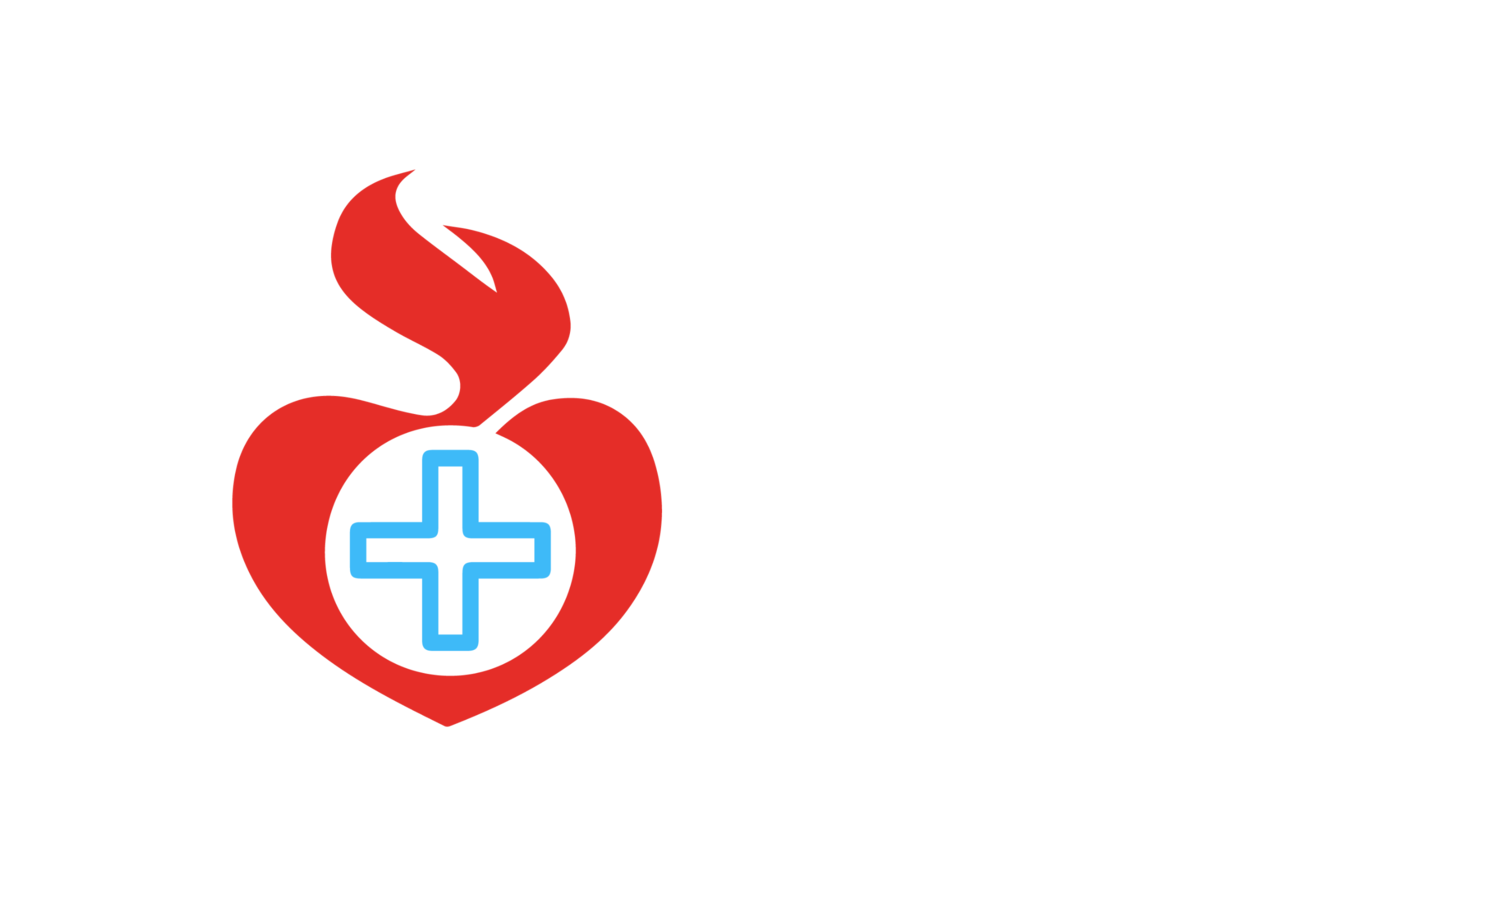 Sestry Boromejky